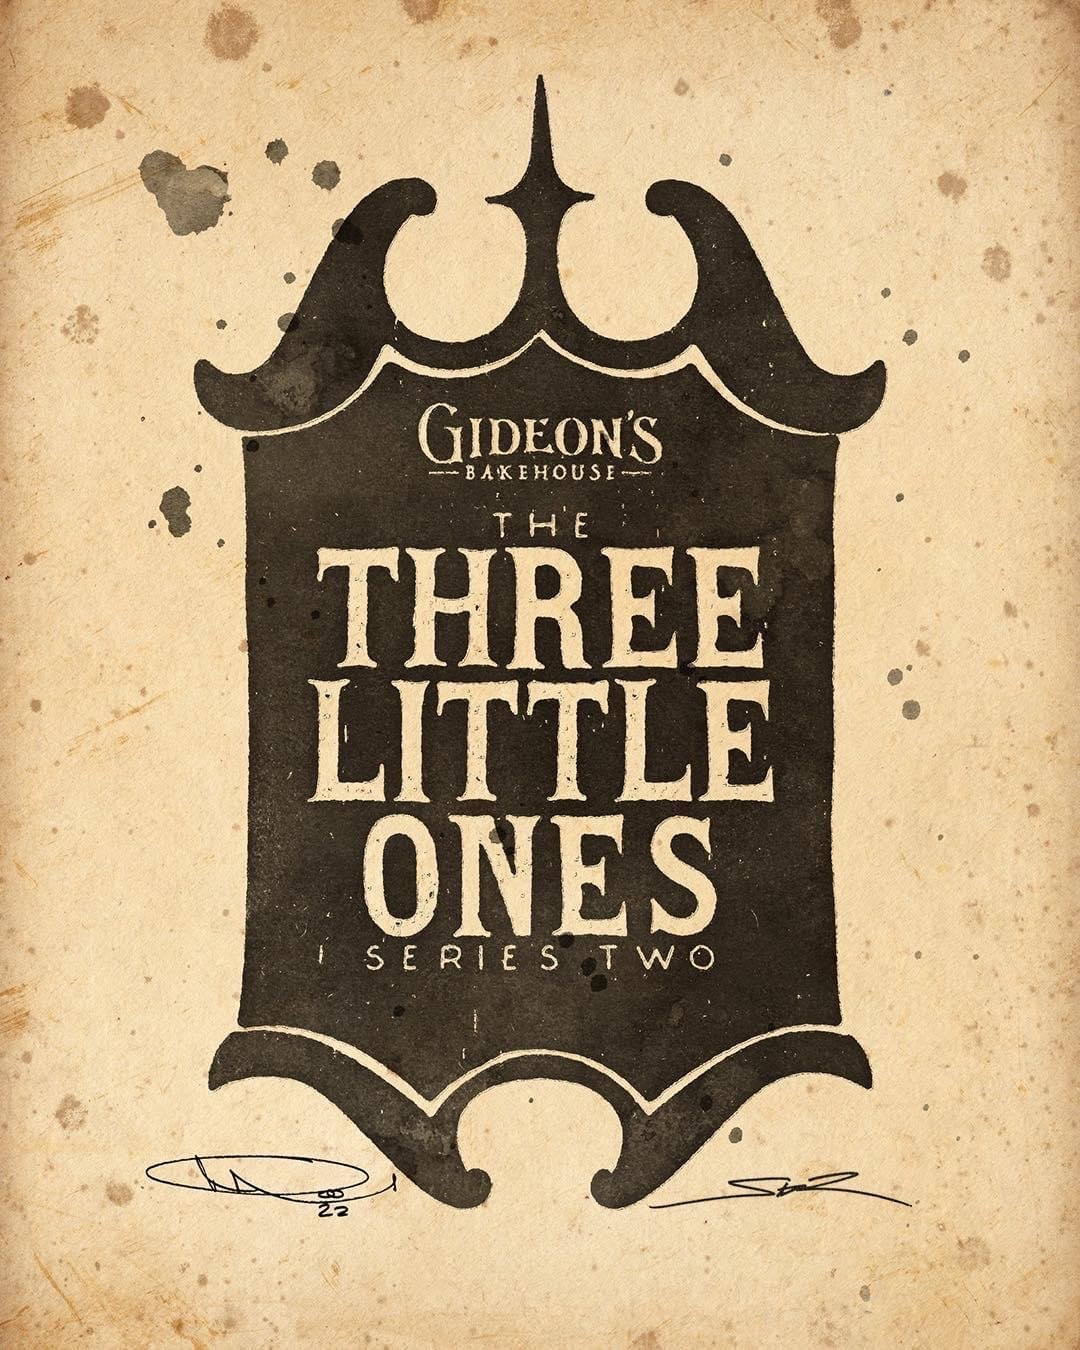 The Three Little Ones Art Print Set Nameplate Gideon's Bakehouse Disney Springs October 2022 Merchandise.JPG